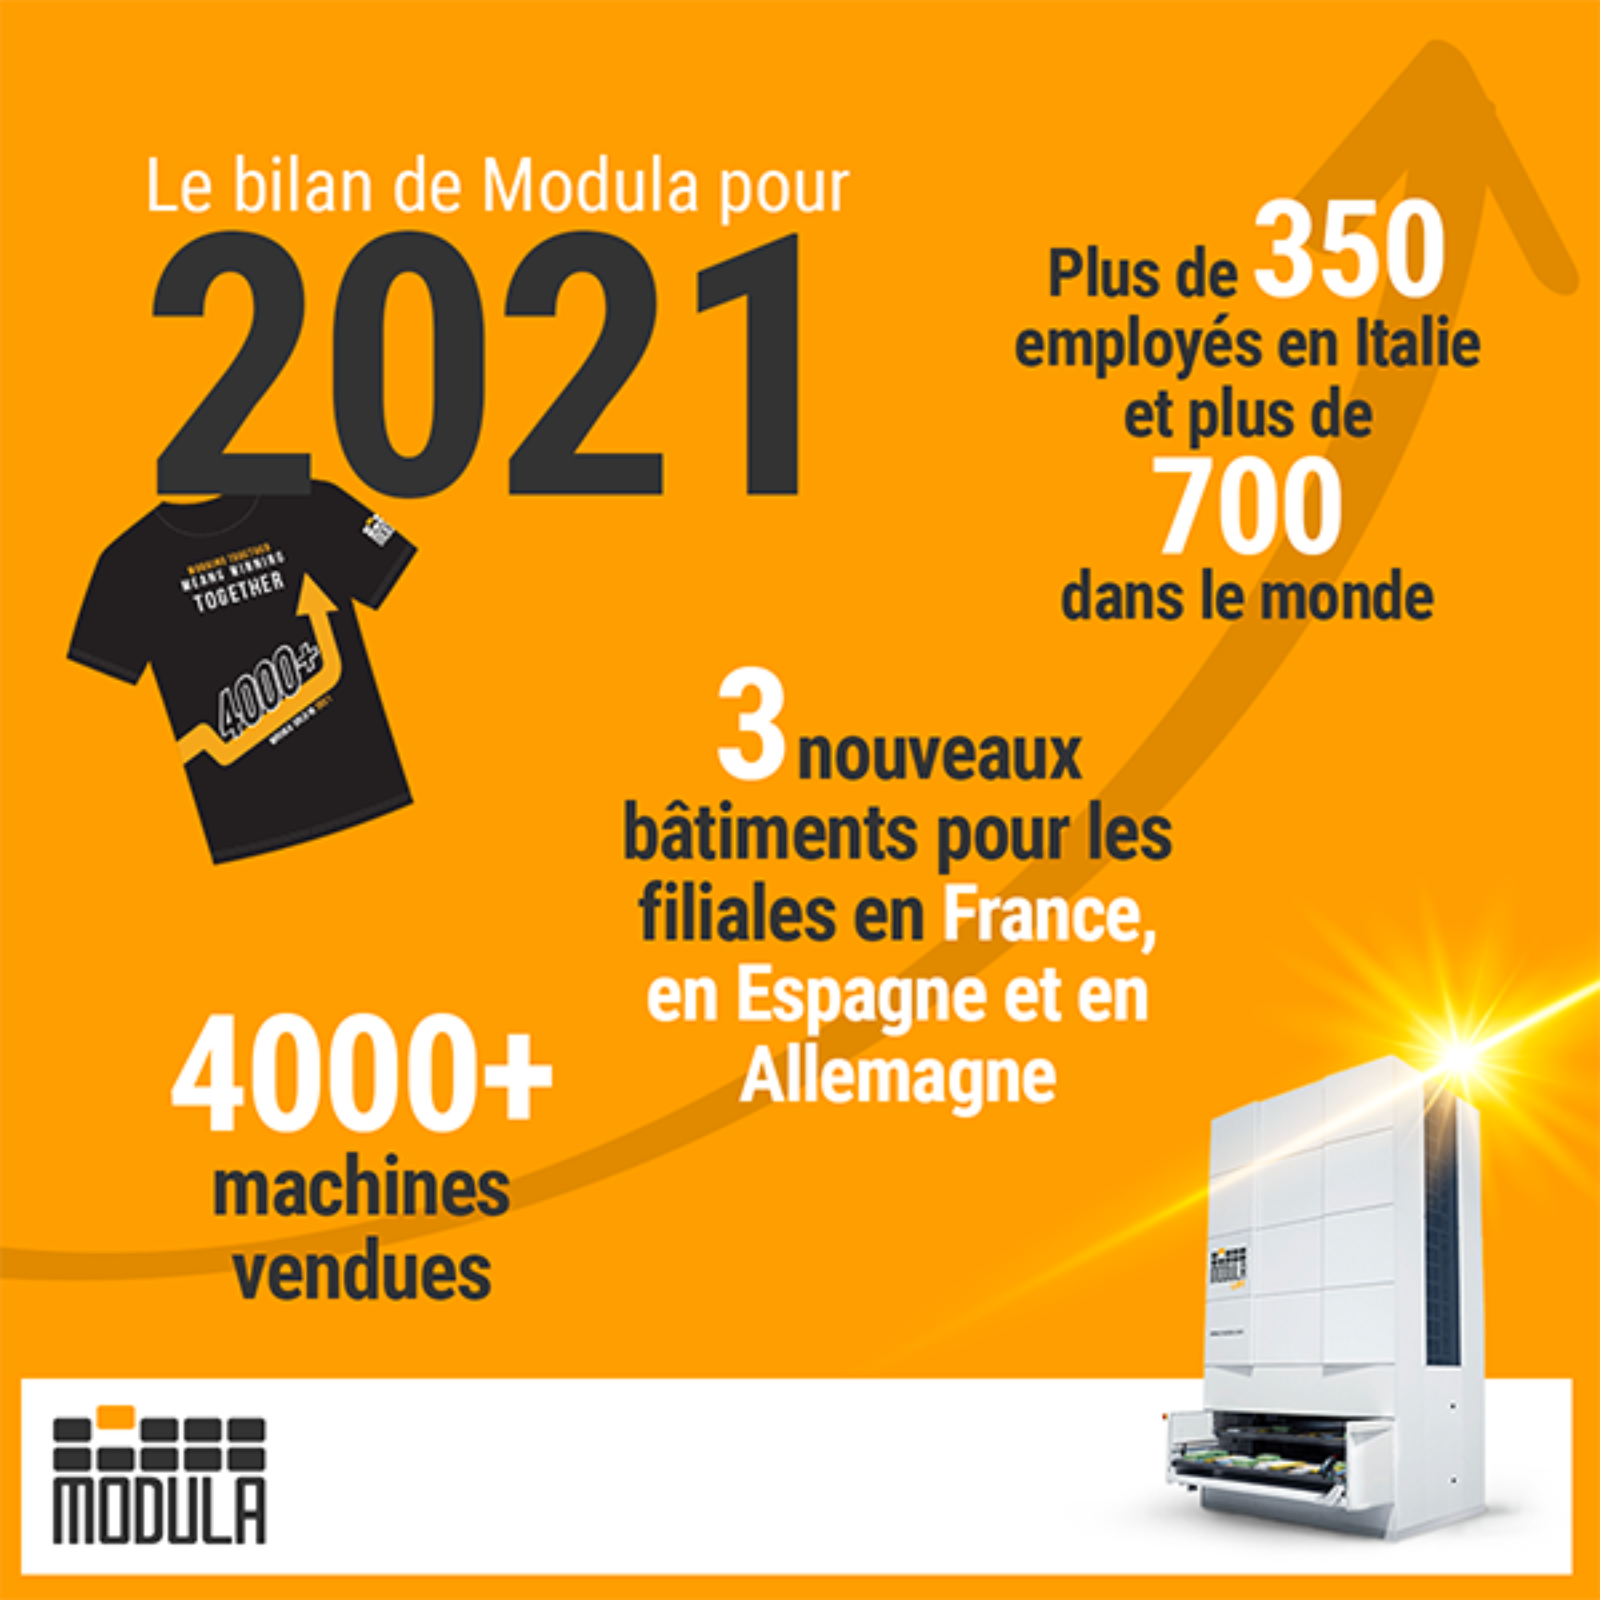 modula-2021-fra_37638